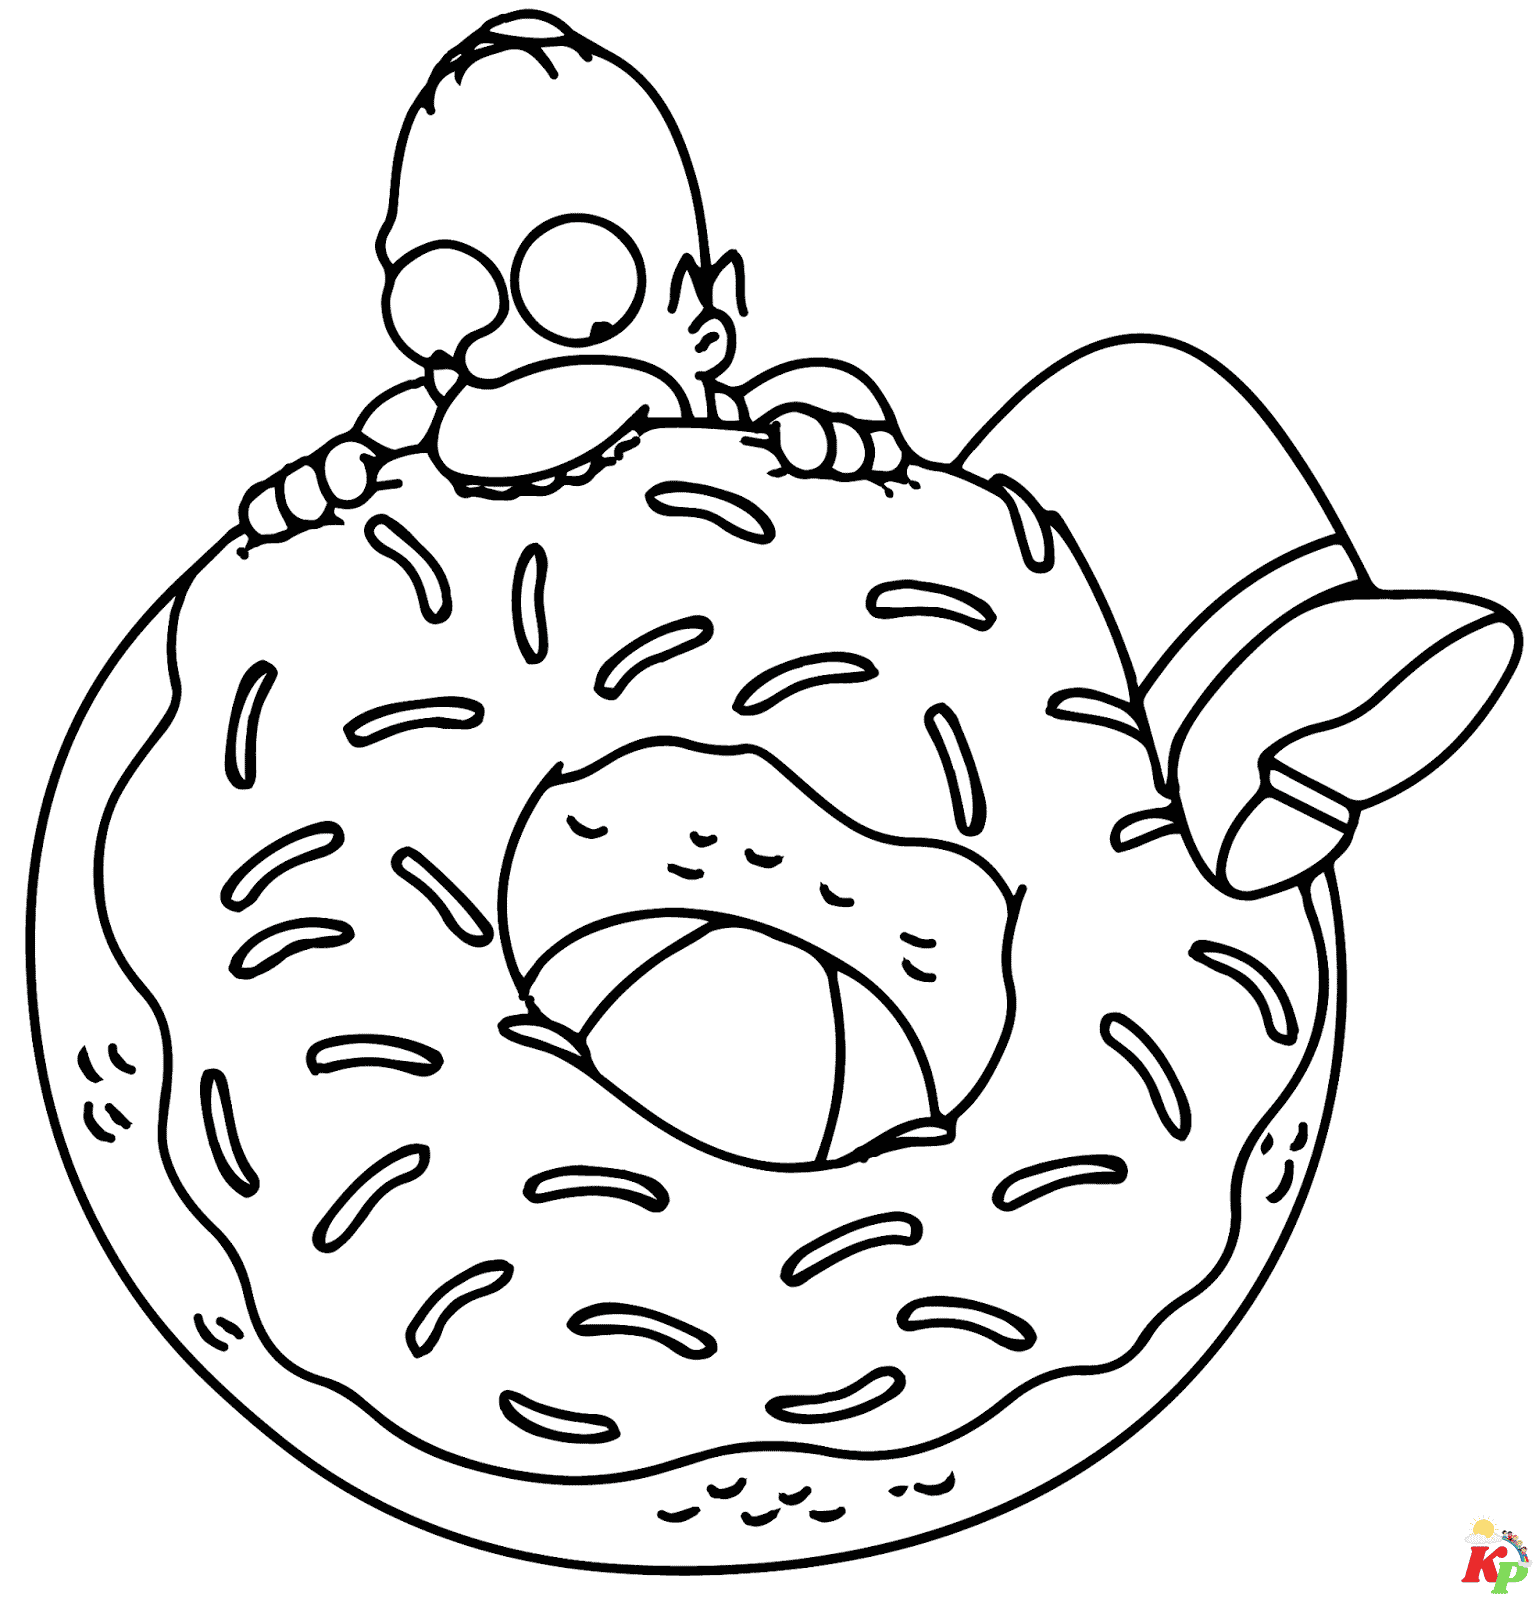 Donut20